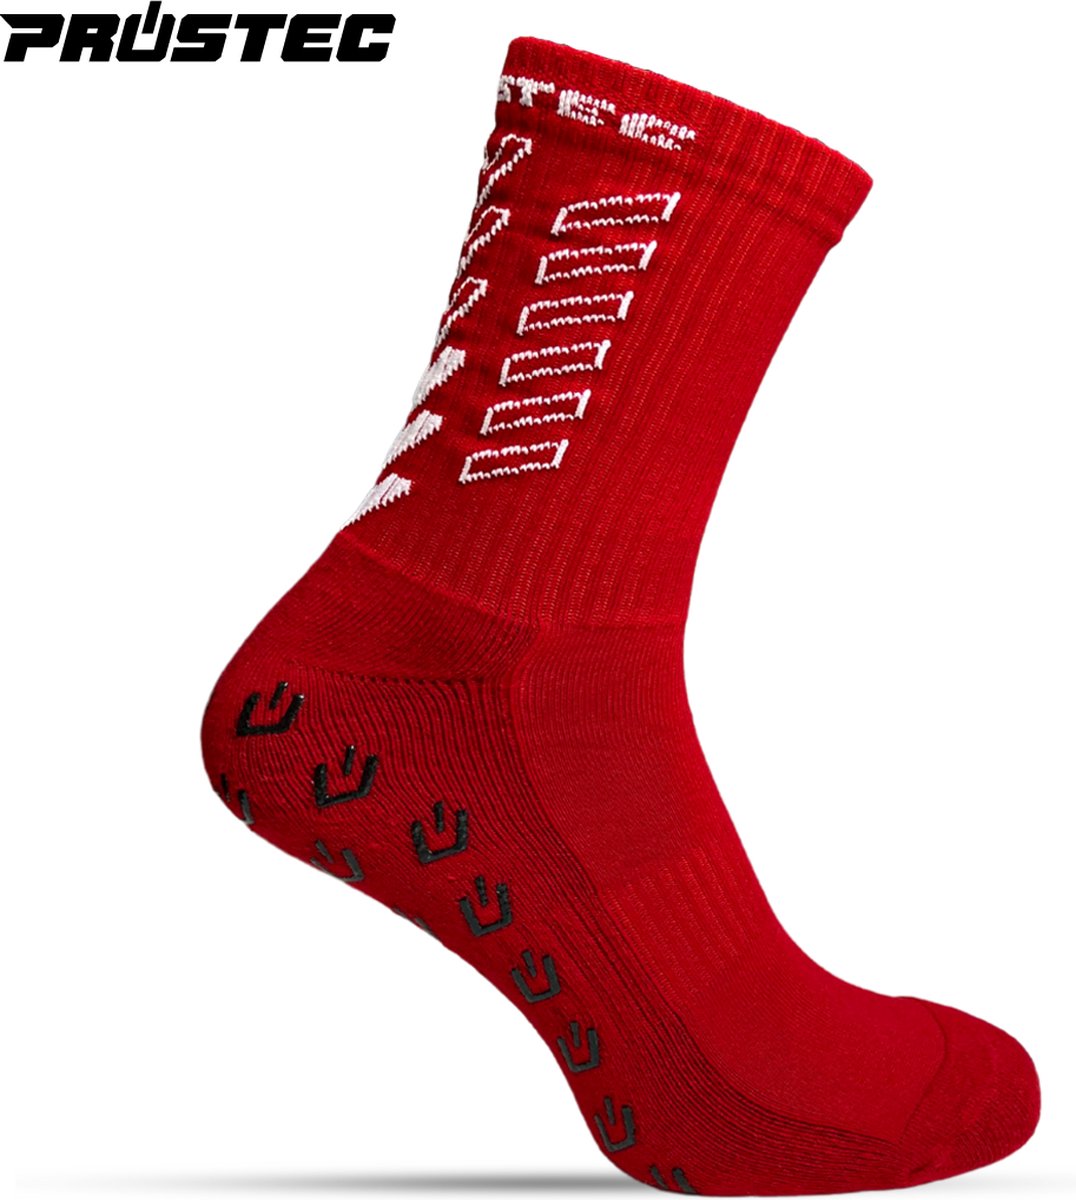 Prostec® Gripsokken - Gripsokken Voetbal - Grip Socks - One Size - Anti Slip - Gripsokken Rood